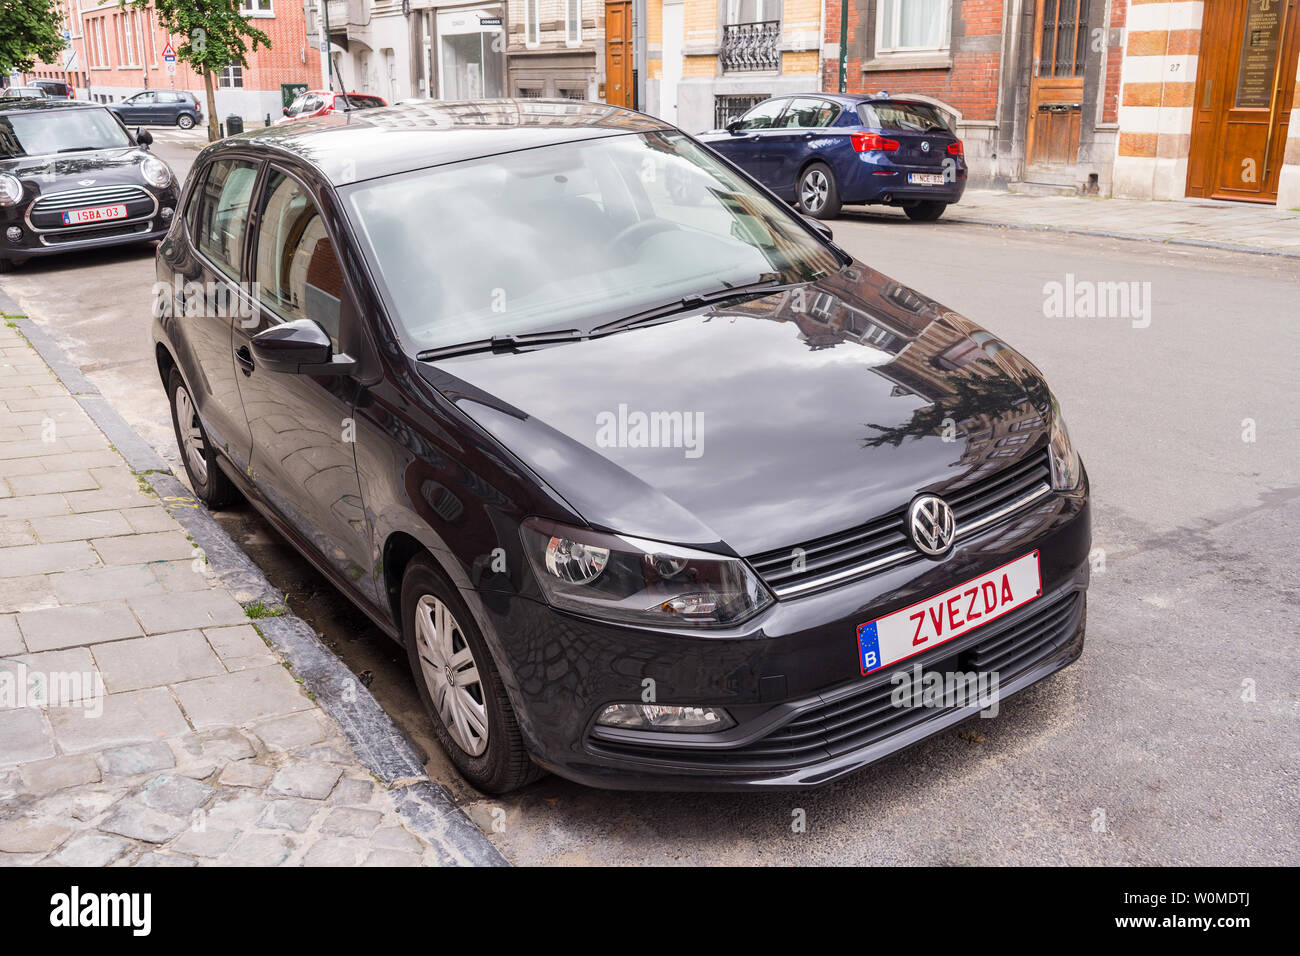 Volkswagen Golf con "Zvezda" placa de matrícula personalizada, Bruselas, Bélgica. Foto de stock